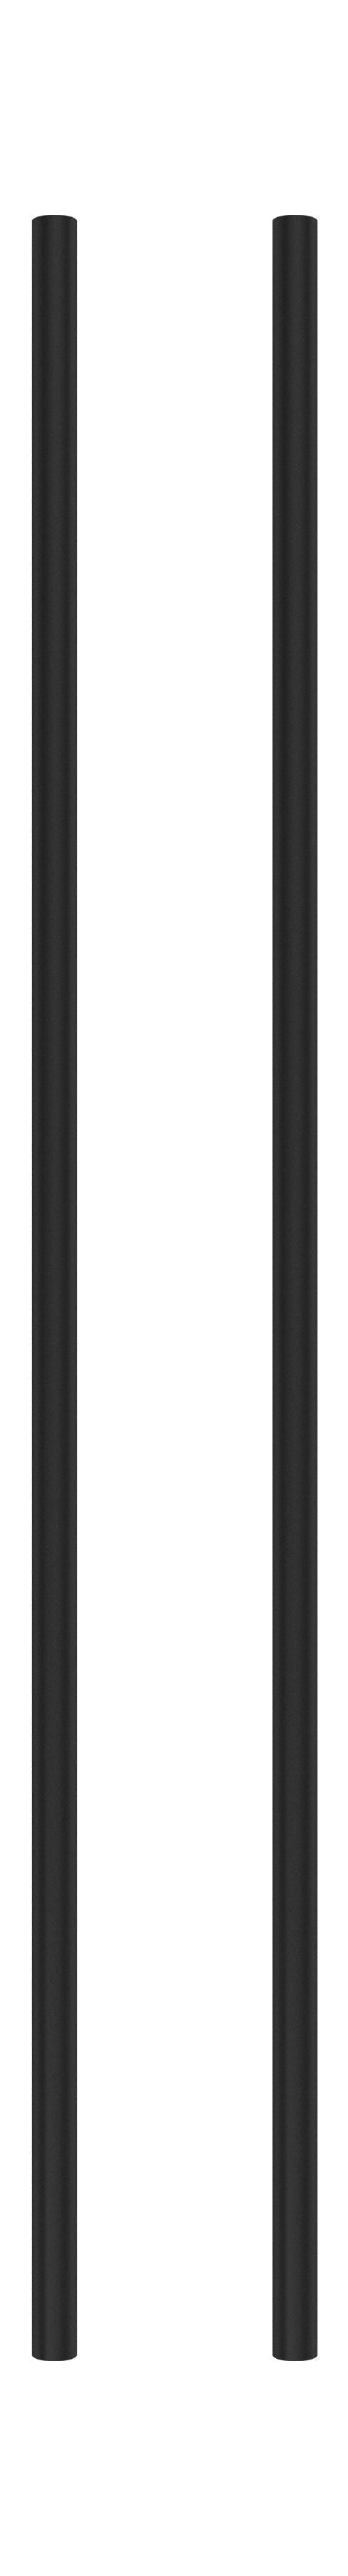 Moebe Regalsystem/Wandregalbein 85 cm schwarz, 2 Set von 2